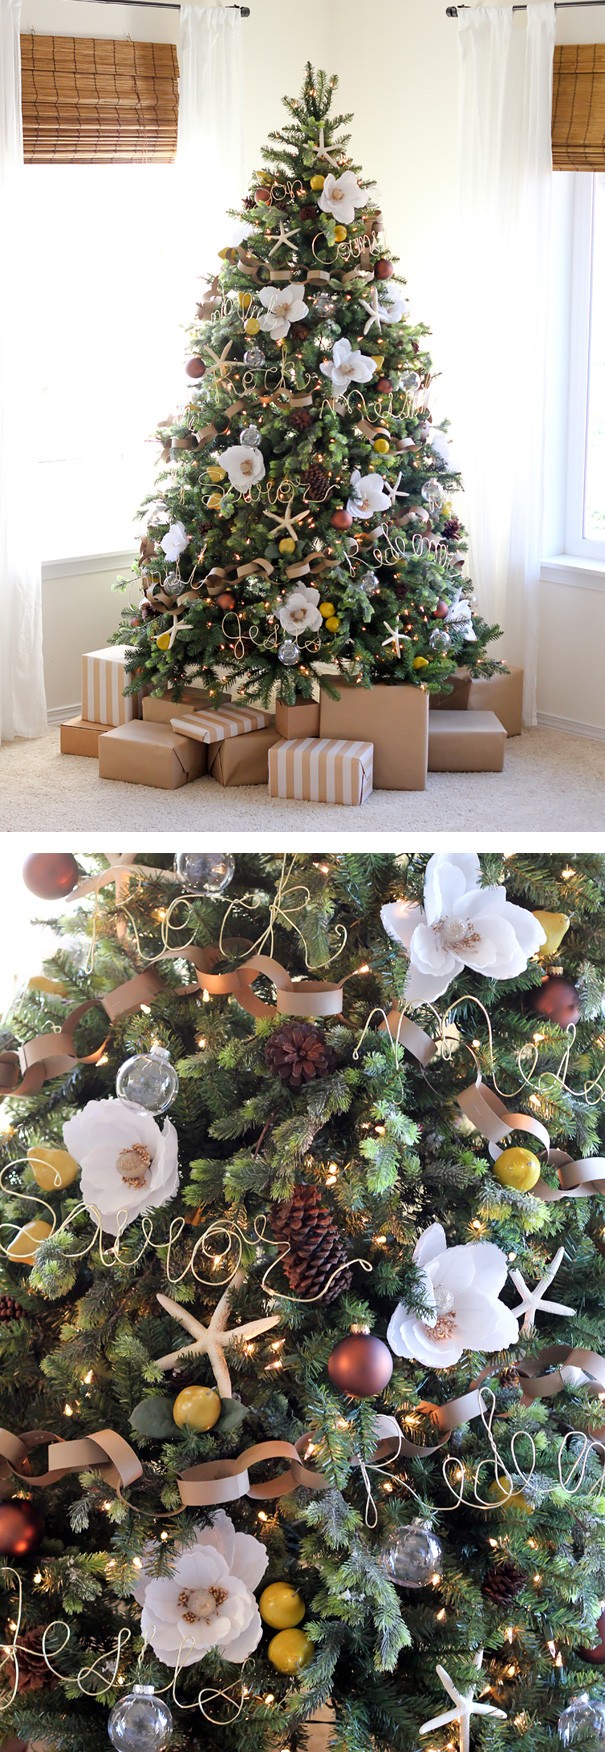 Alternare i fiori con elementi a tema può essere un modo per inglobare l'albero di Natale in uno spazio speciale! ;-)